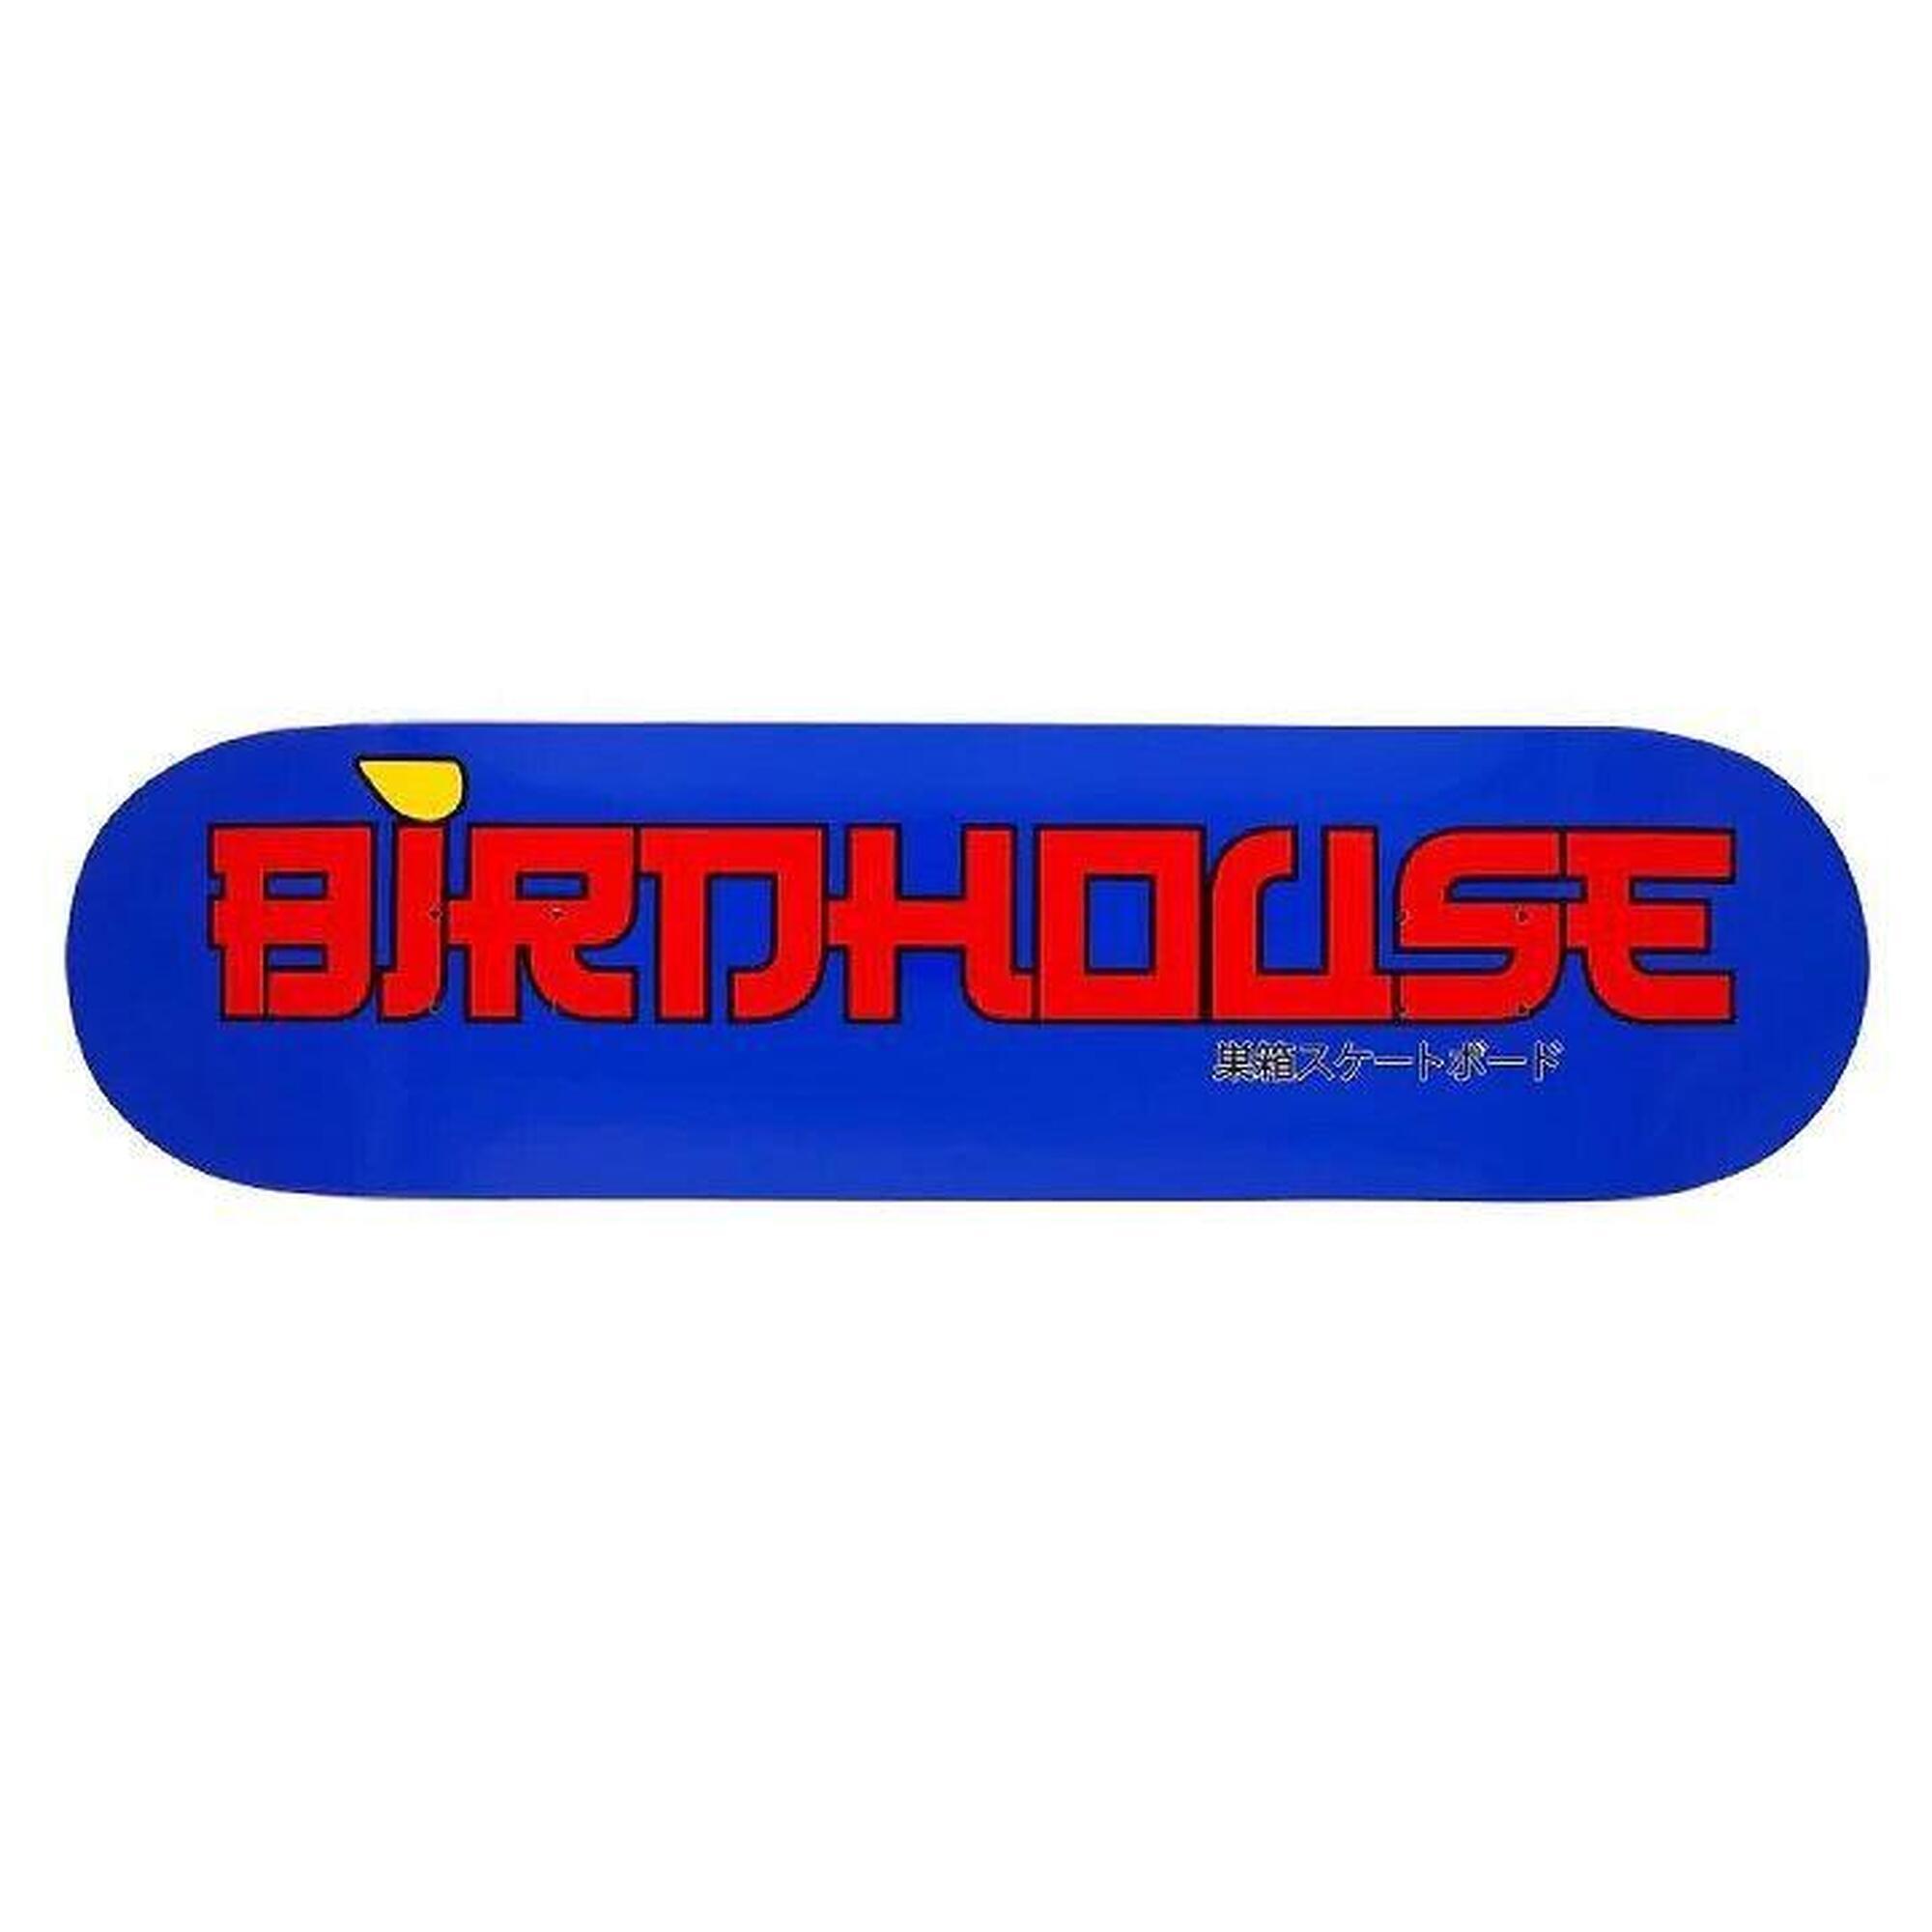 Birdhouse Skateboard Deck 8,25 Japan Logo